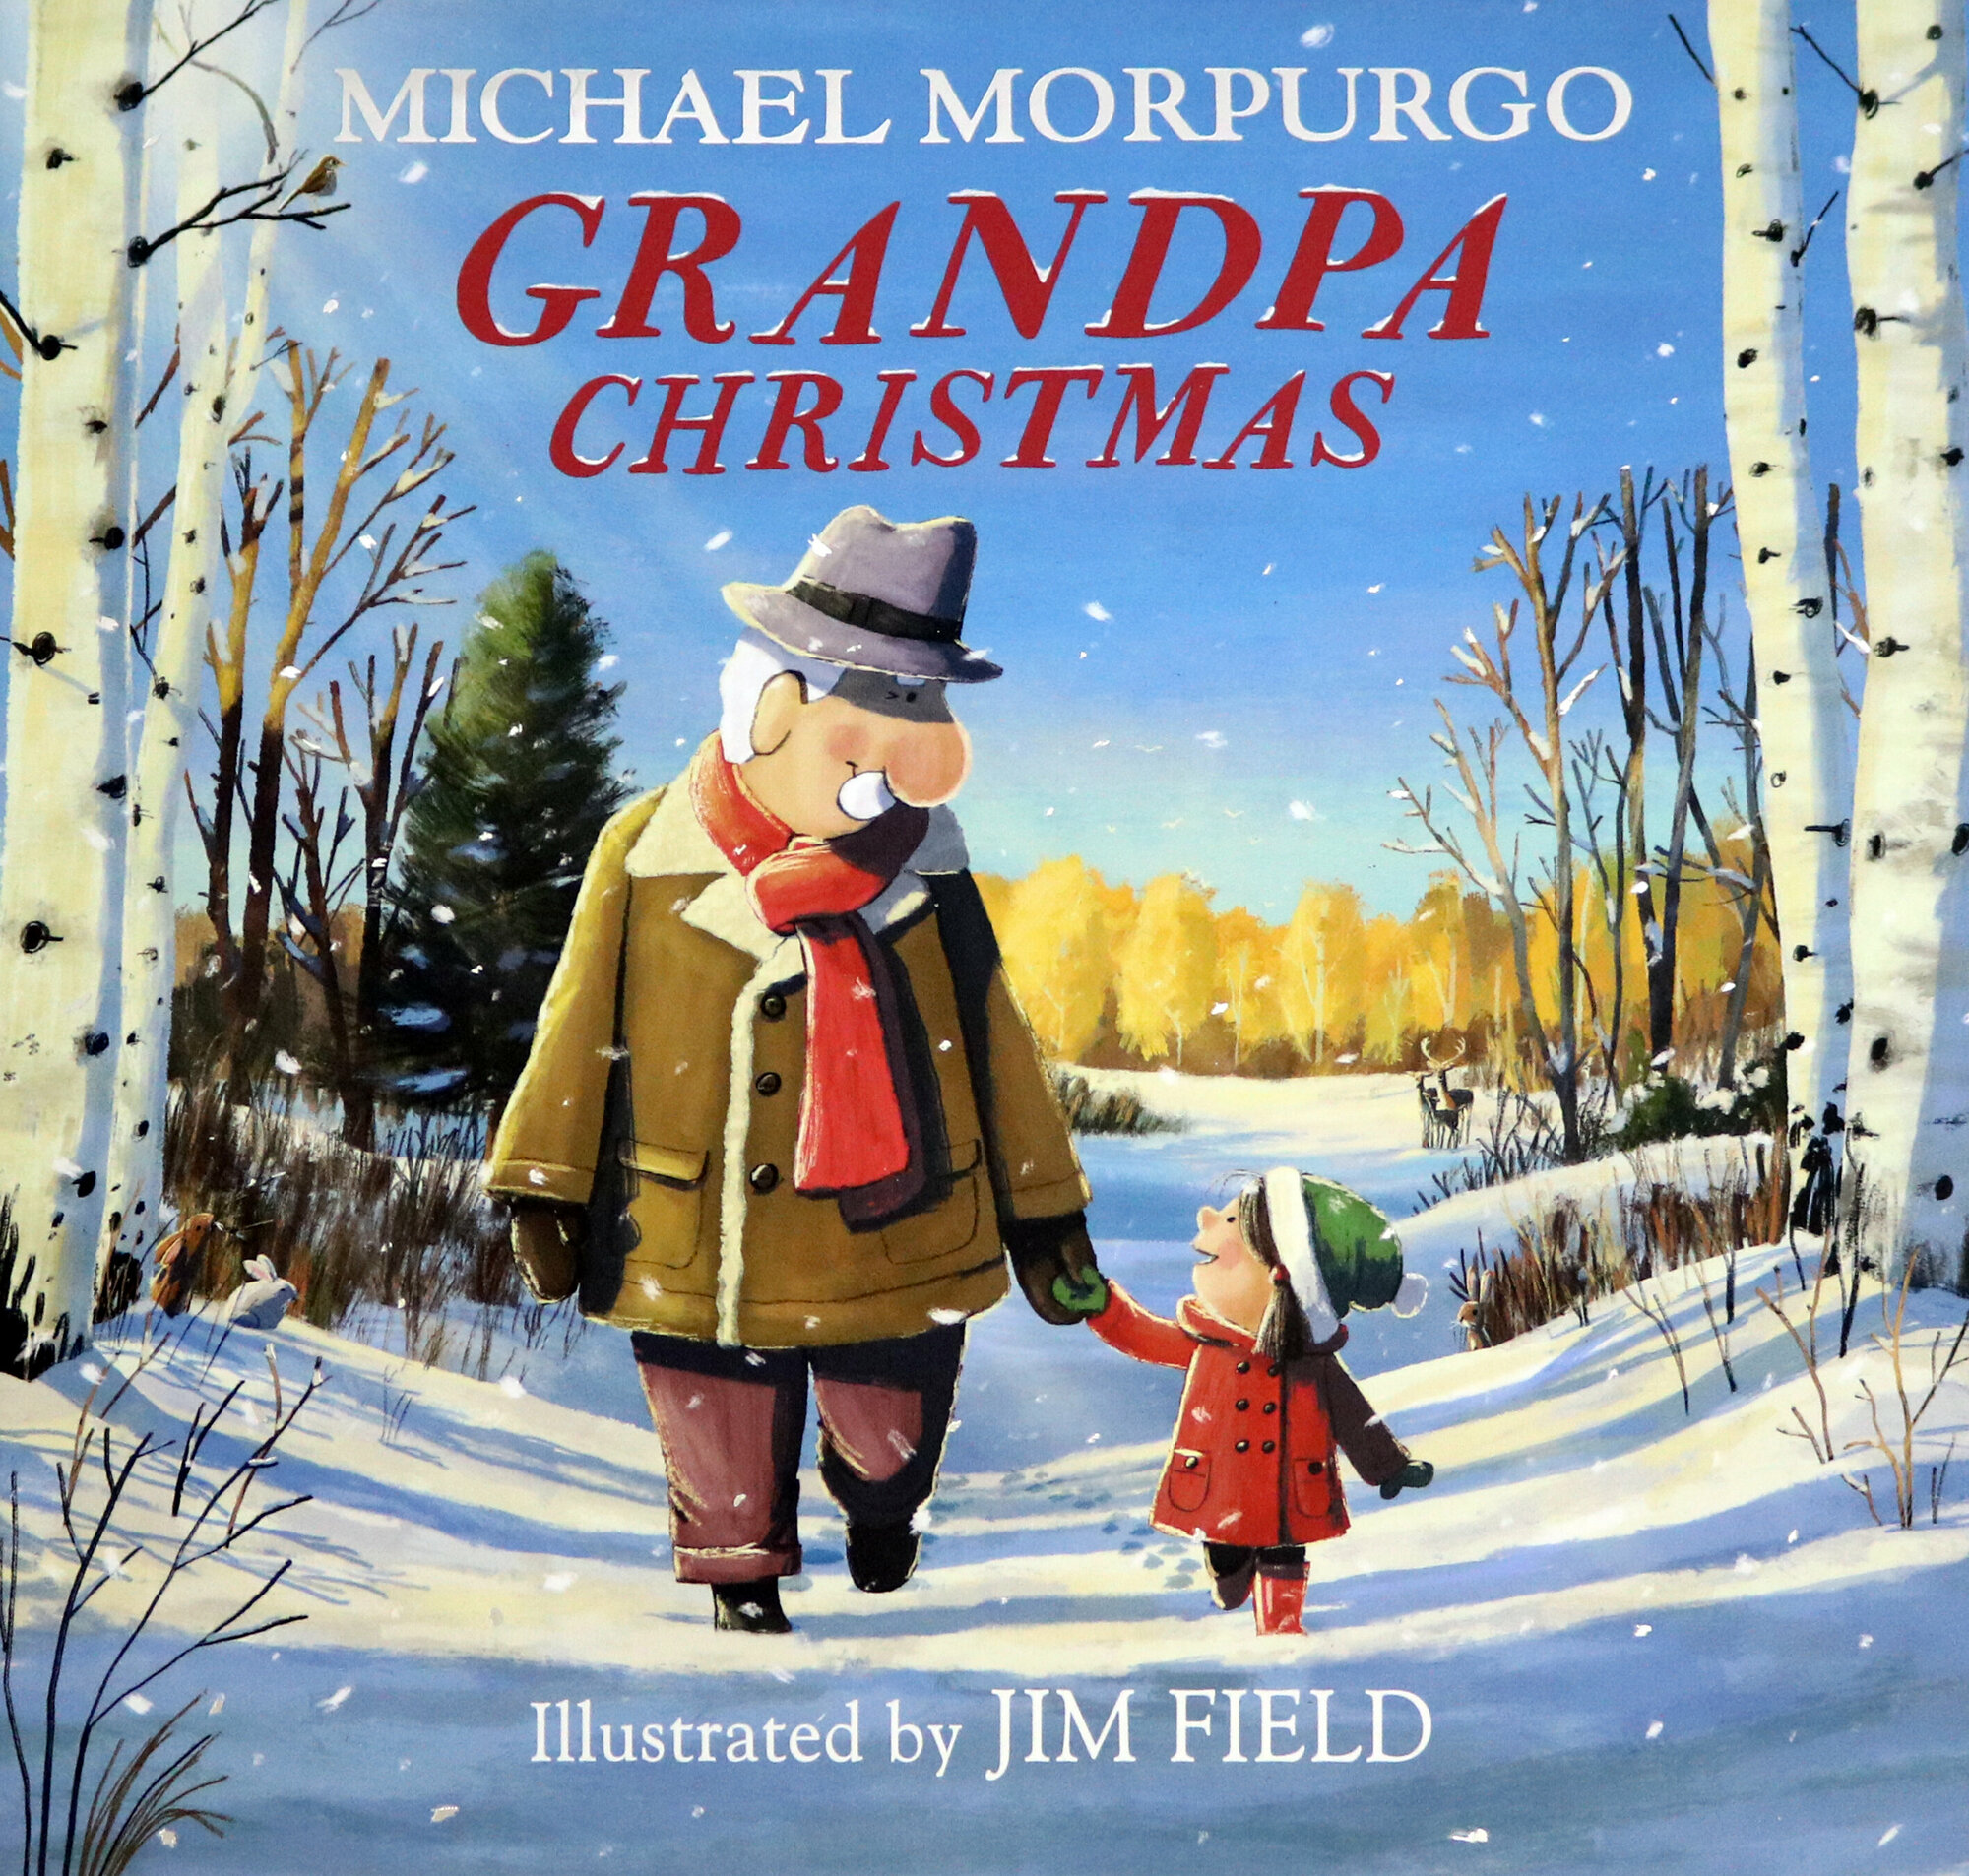 Grandpa Christmas (Морпурго Майкл) - фото №1